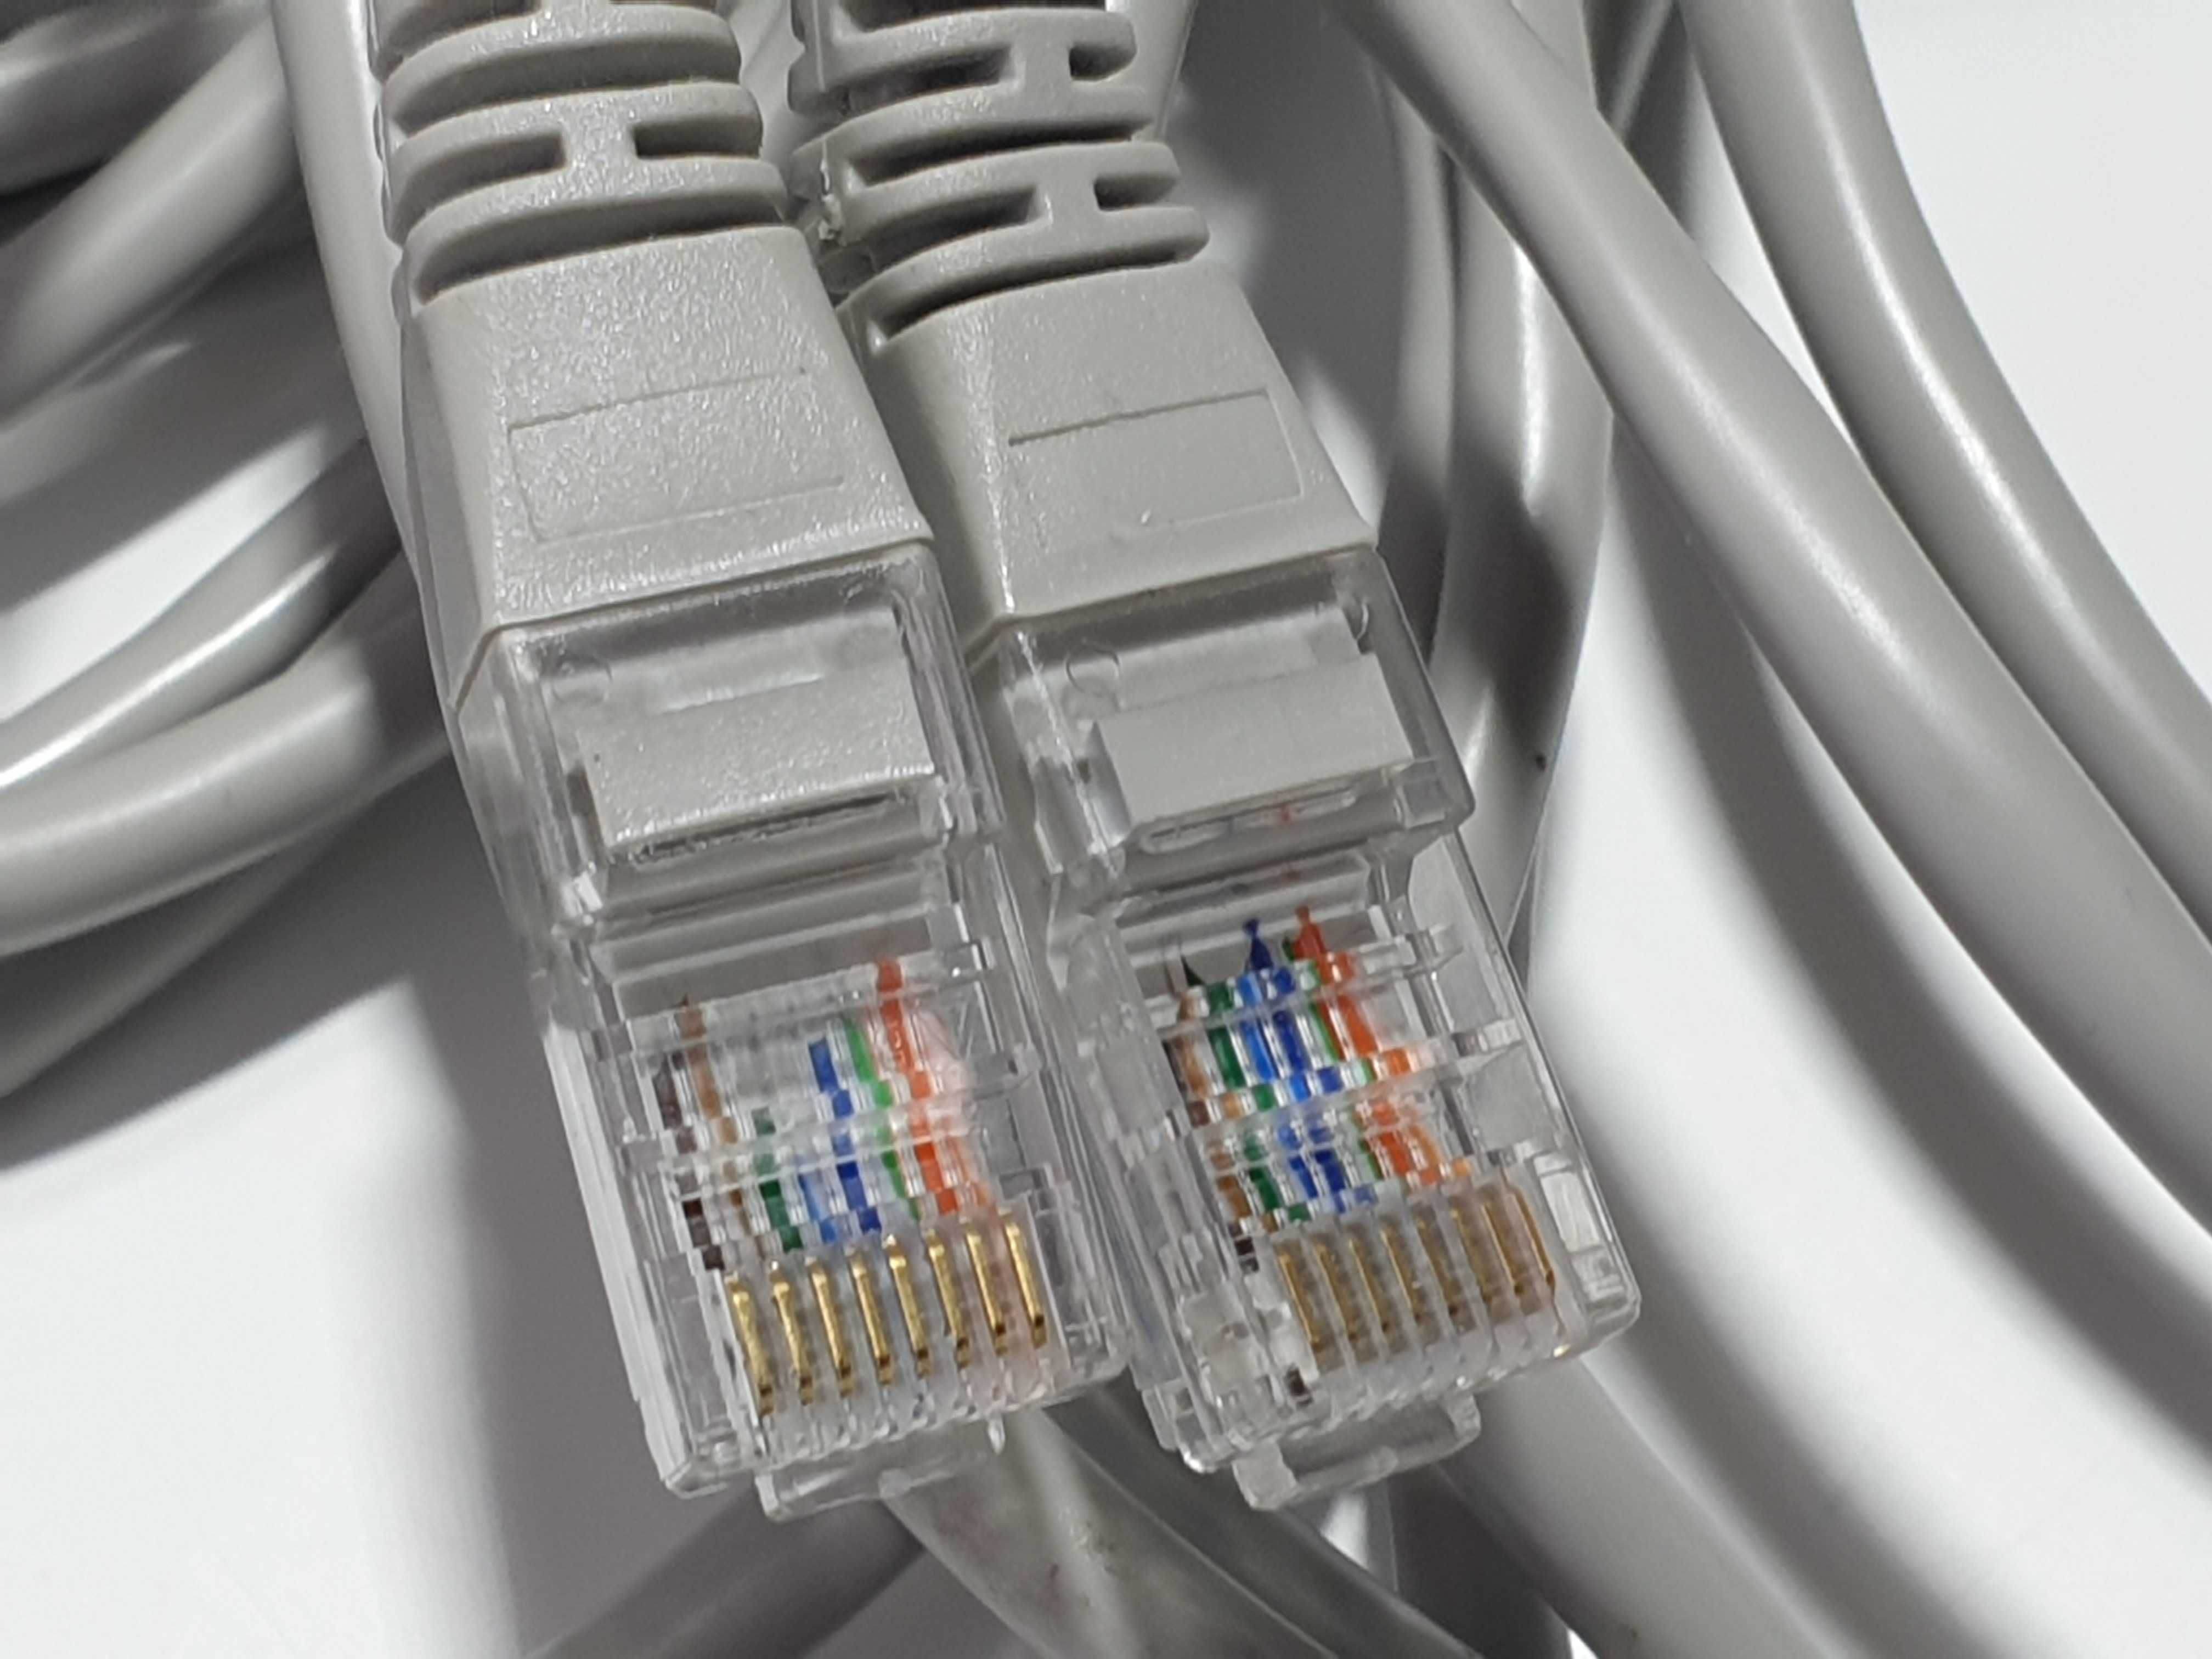 Патч-корд інтернет кабель вита пара RJ-45 LAN 20м